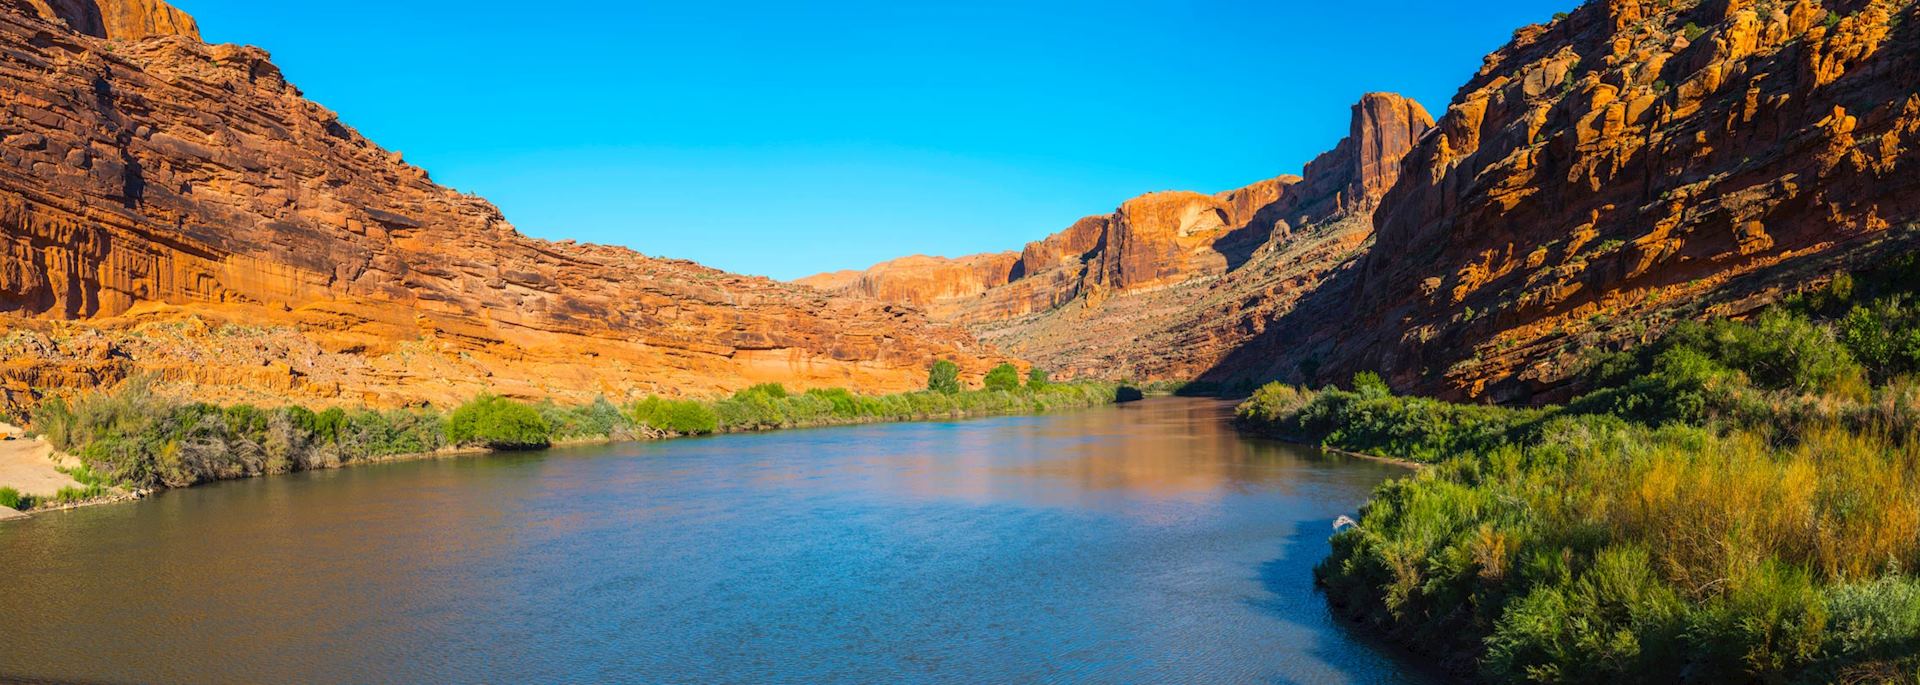 Colorado River, Moab